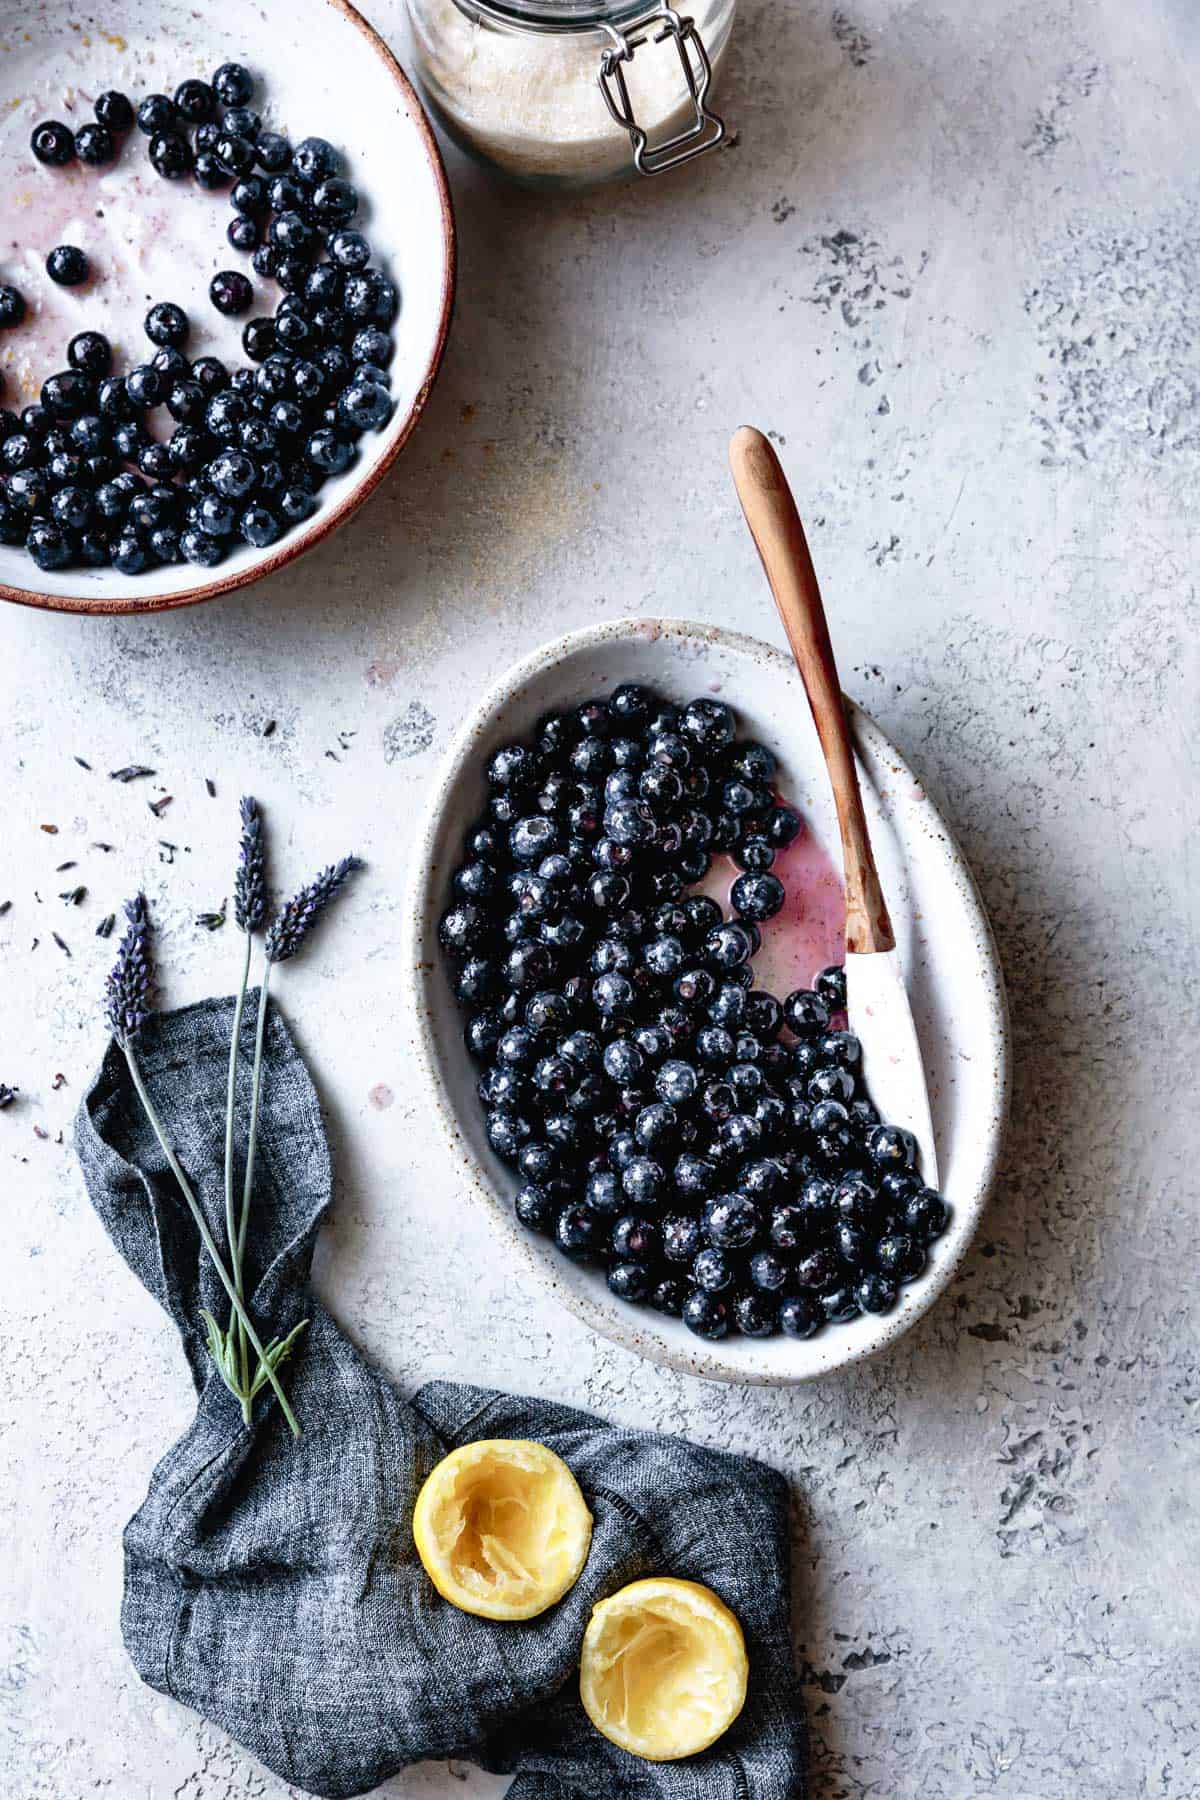  Blueberries for gluten-free blueberry cobbler recipe